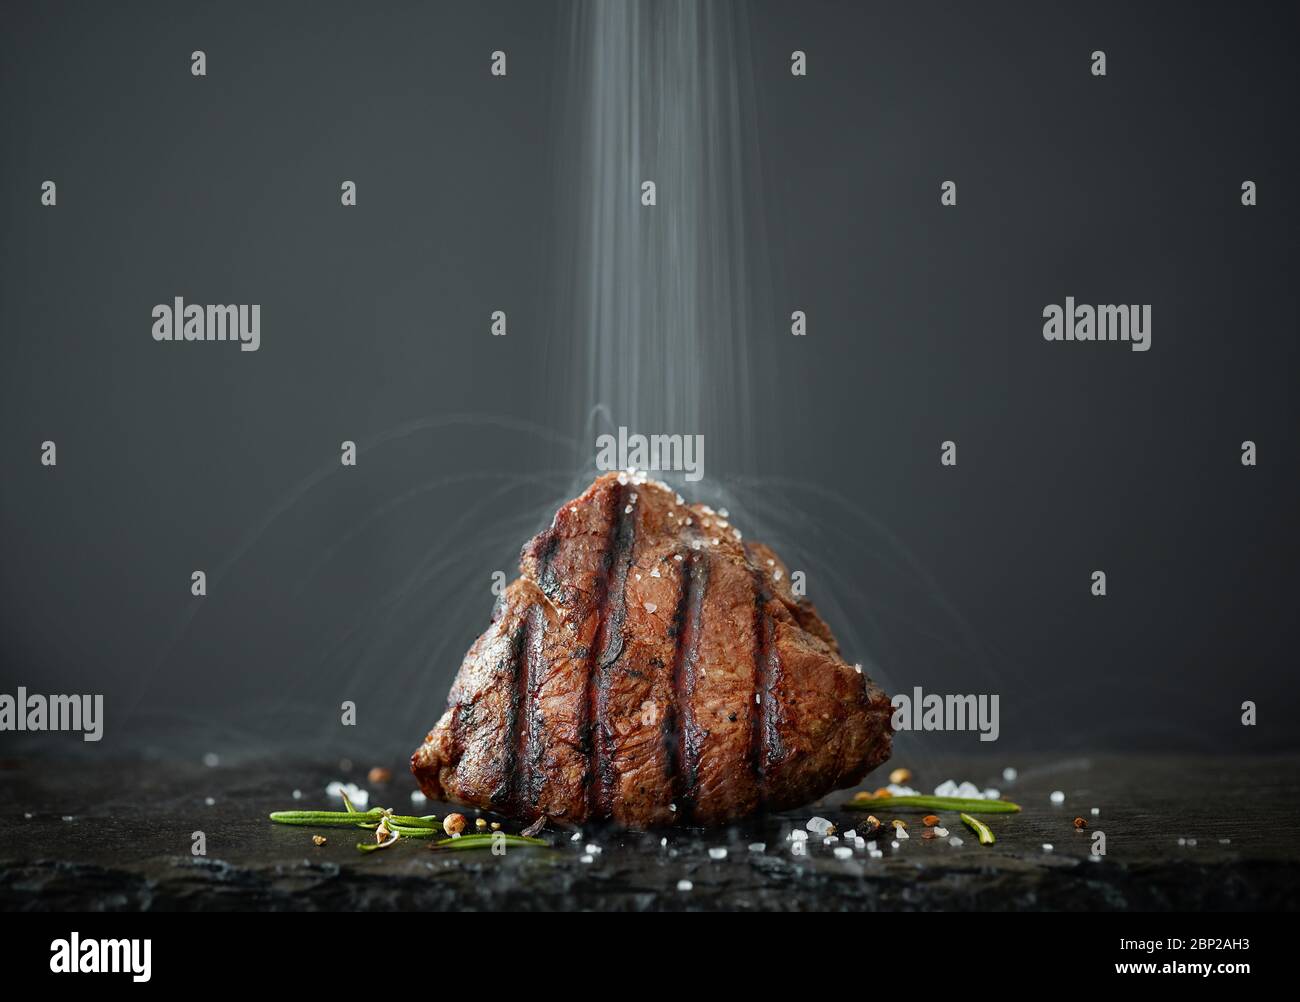 la sal se vierte en un bistec recién asado, tomado con una exposición larga Foto de stock